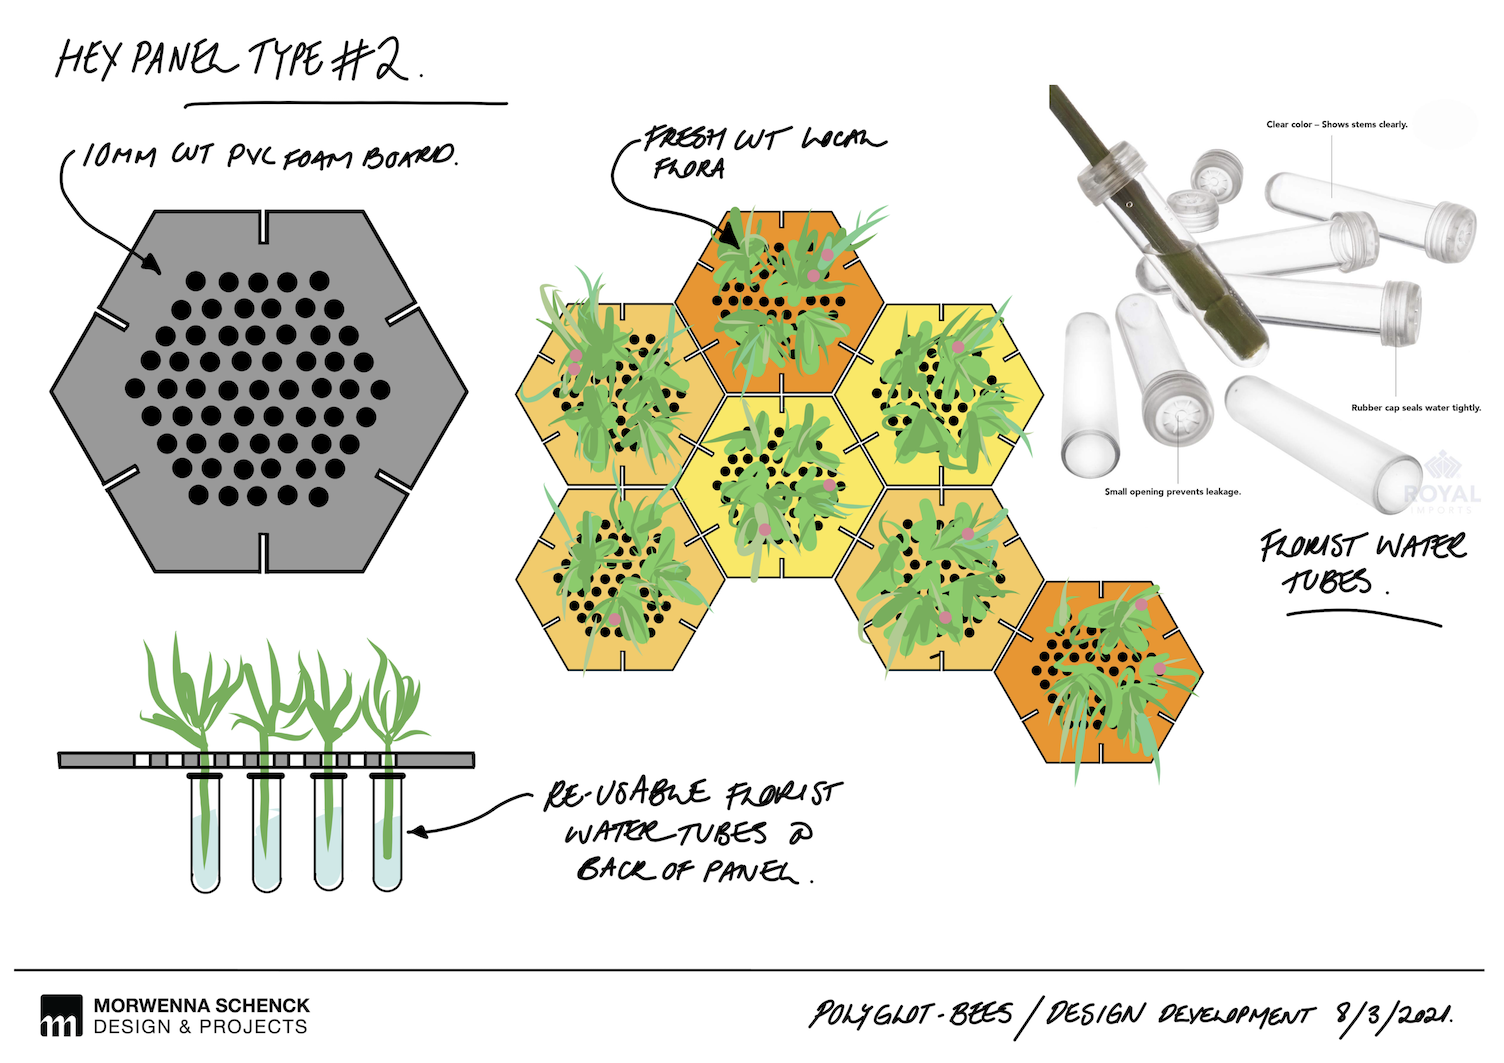 Bees_Design Development_Morwenna Schenck_4.png